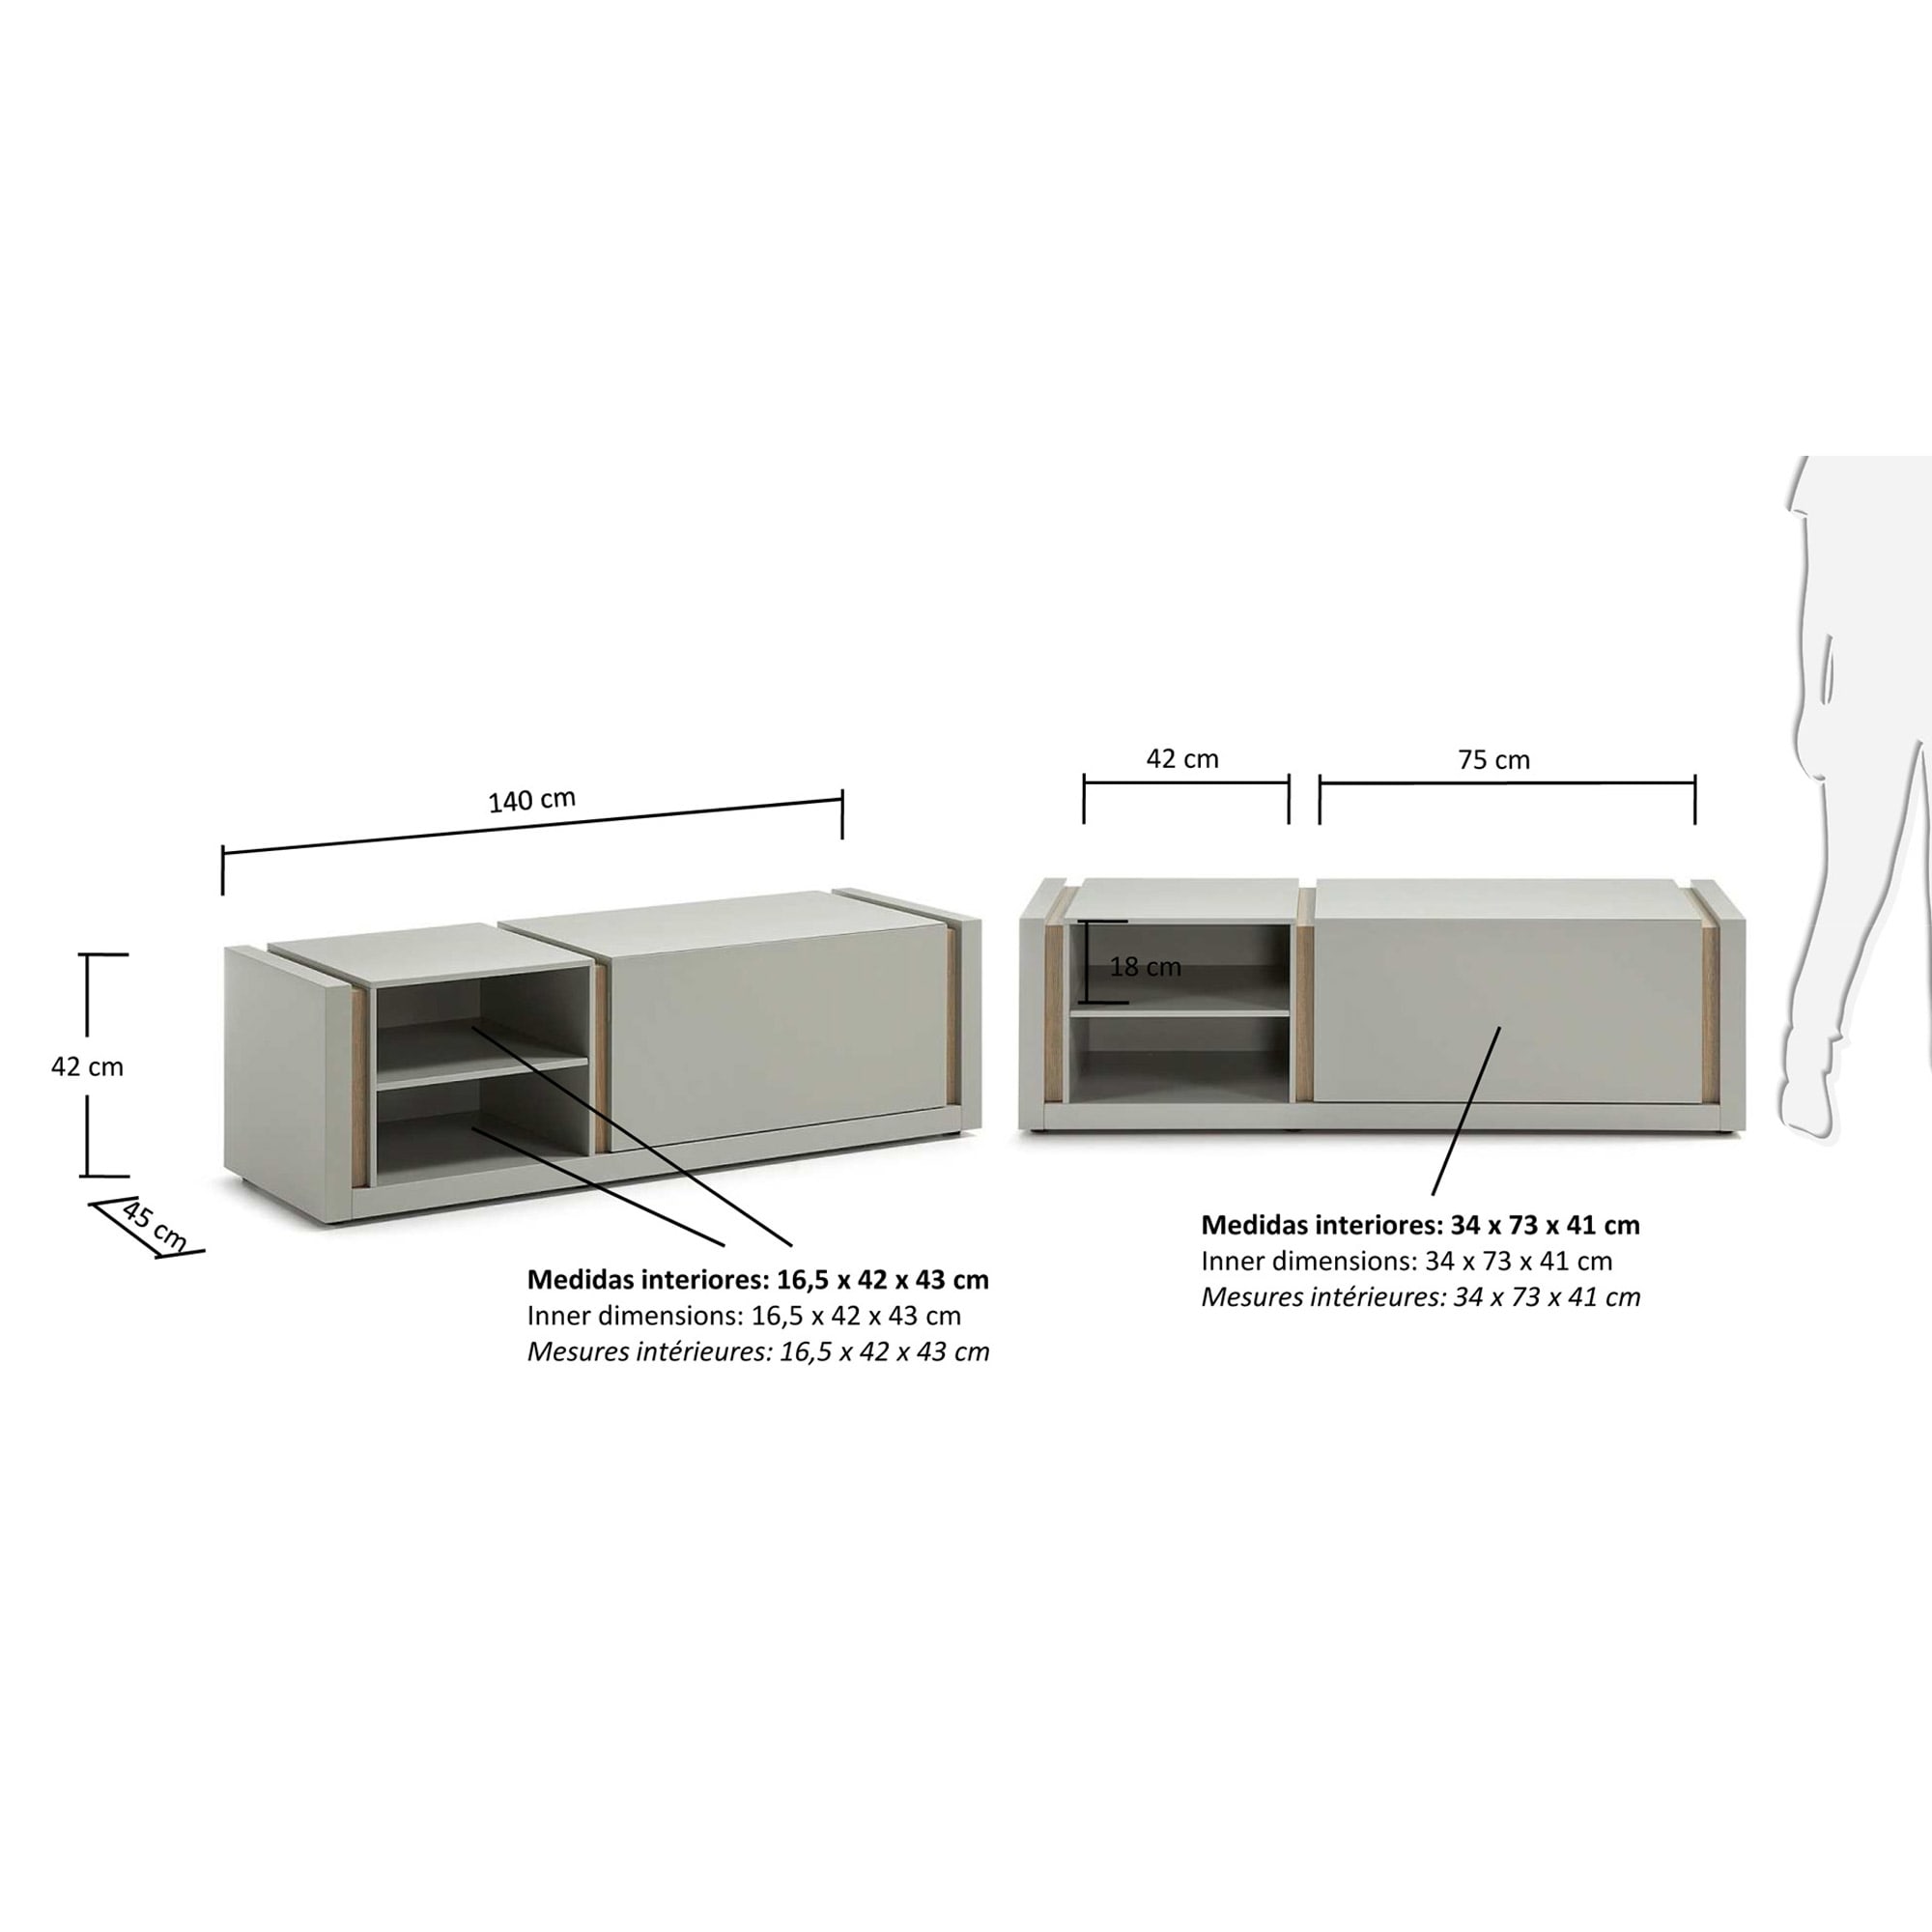 DE Tv cabinet, 140 cm grey - sizes